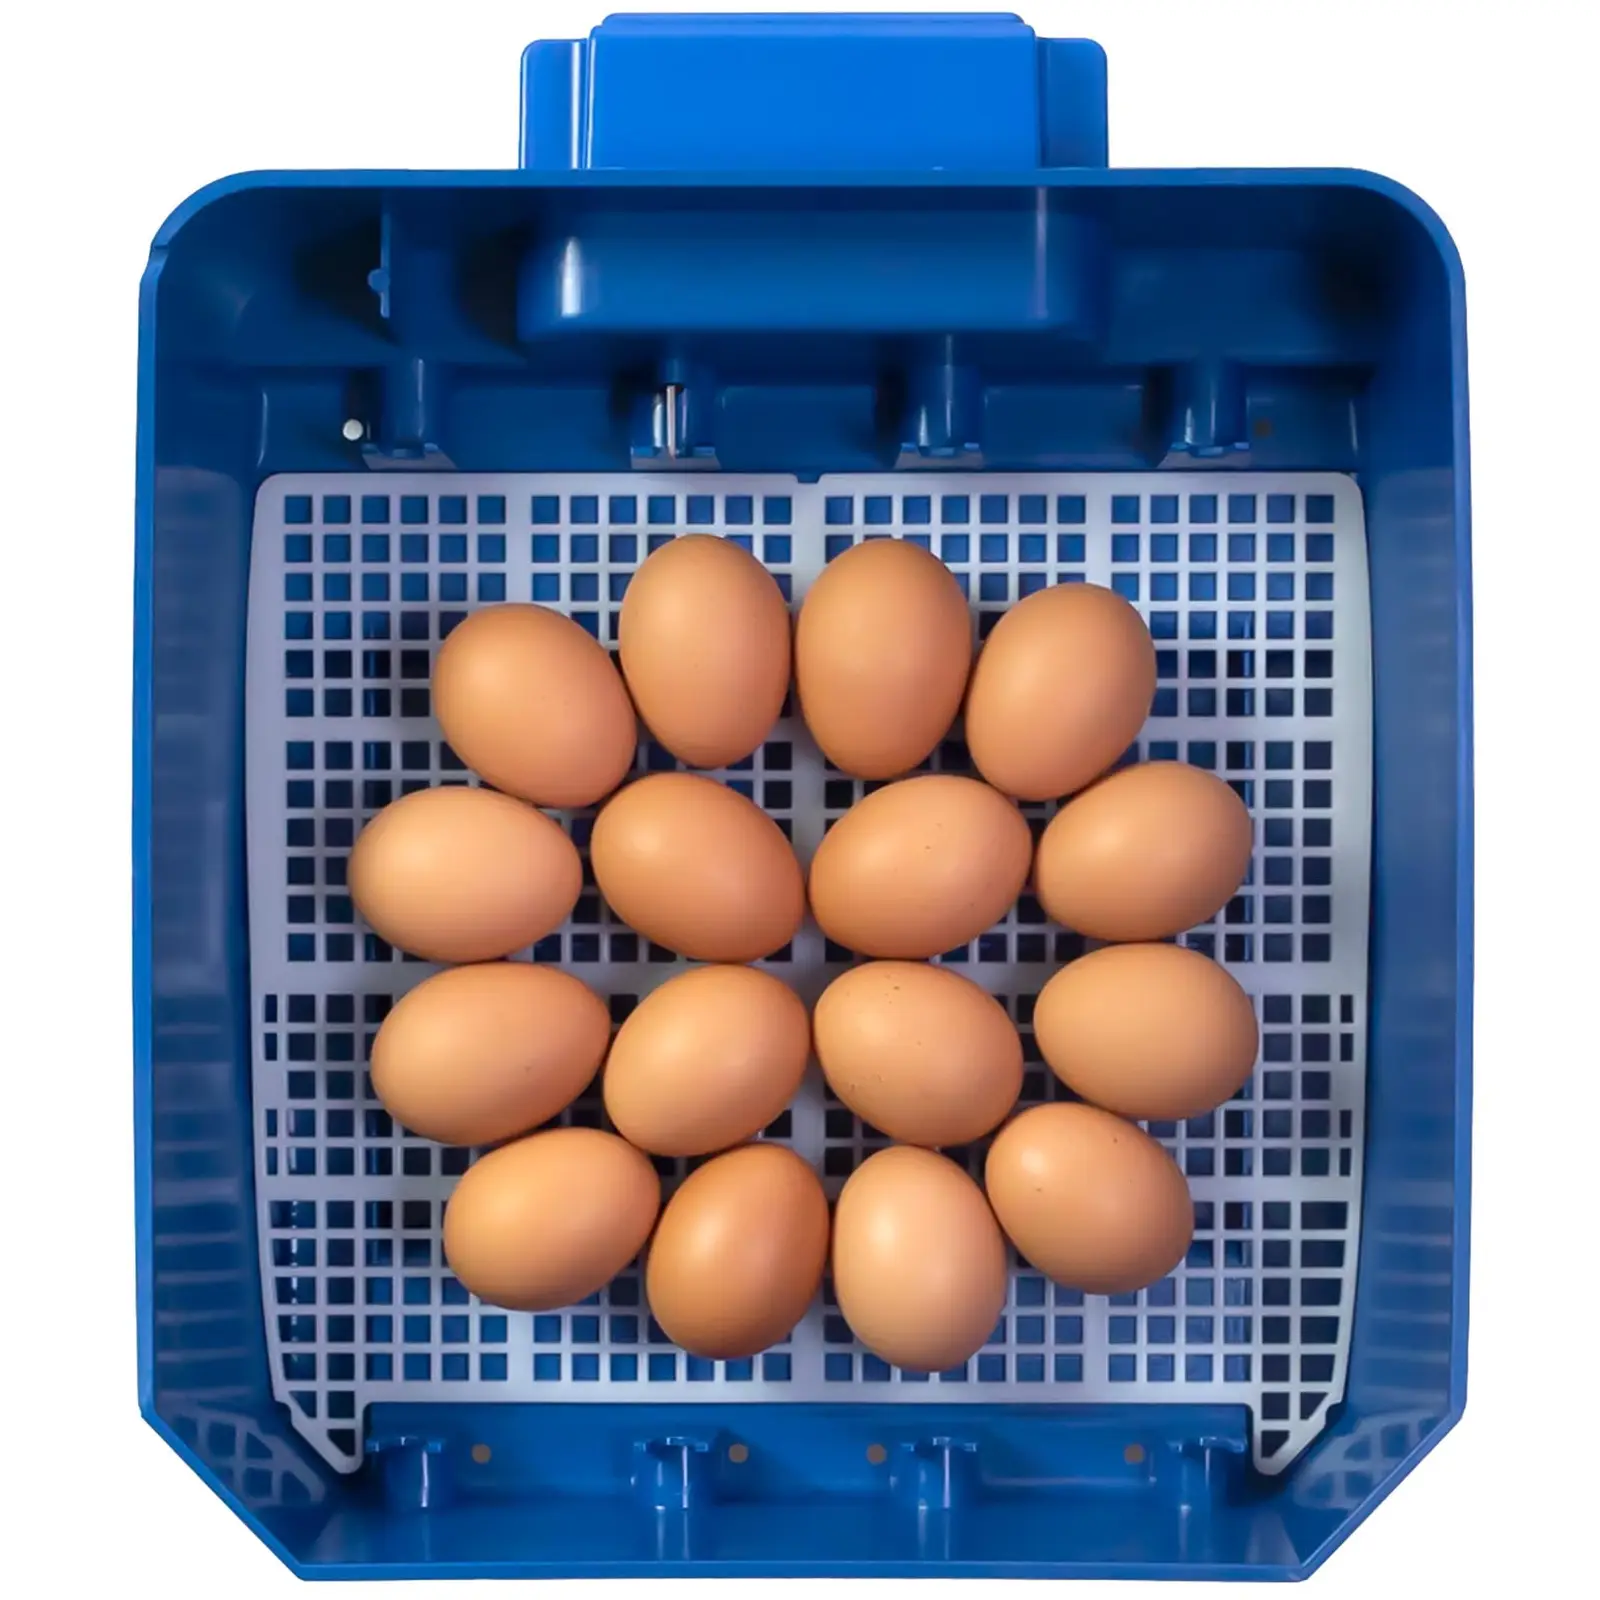 Keltetőgép - 16 tojás - öntözőrendszerrel- teljesen automatikus - antimikrobiális Biomaster védelem